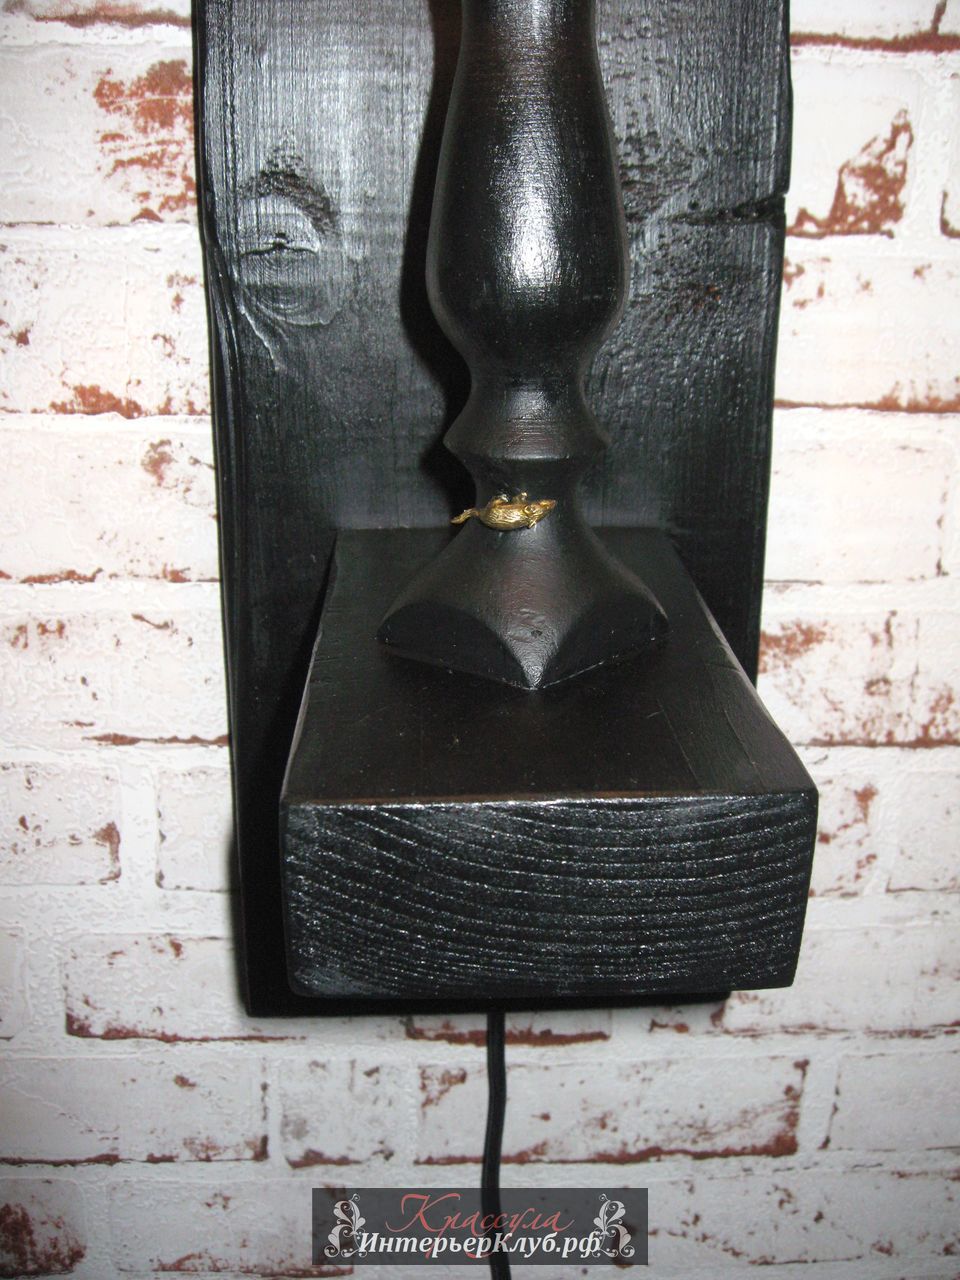 17 Светильник Око - амбарная доска, с элементами декора, цвет черный - золото. Эксклюзивные светильники ручной работы